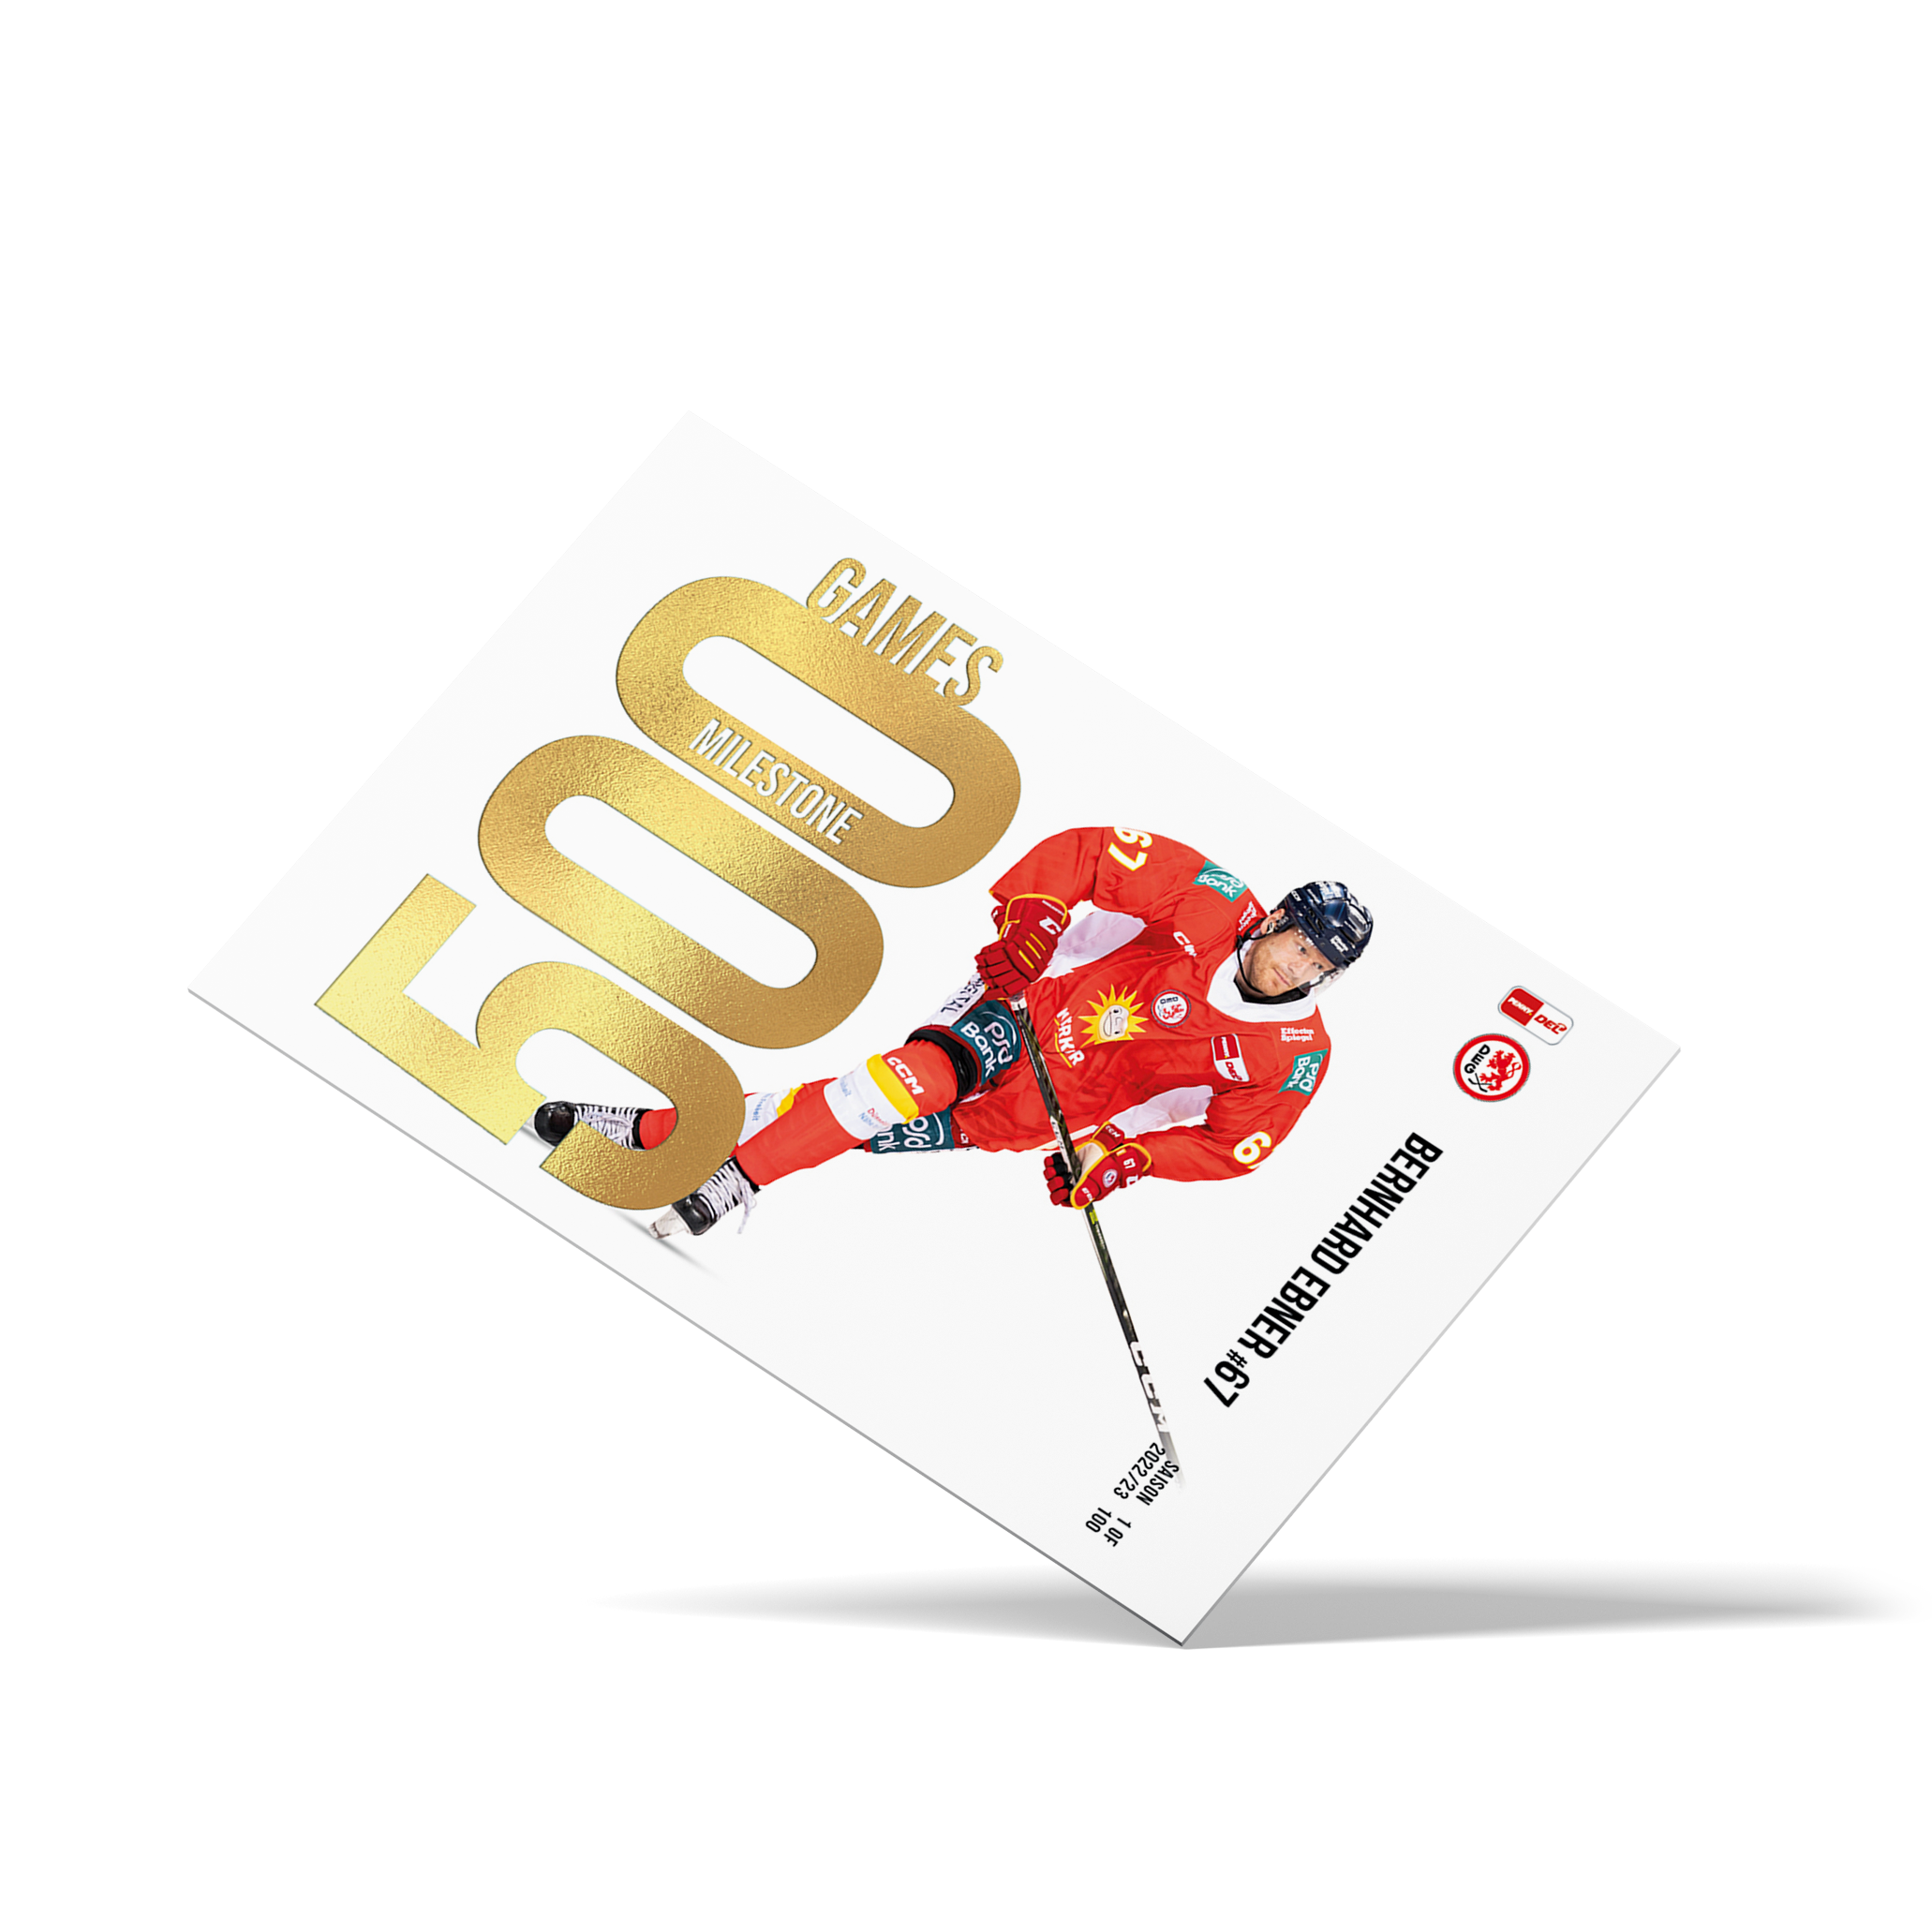 MILESTONE - 500 Games - Bernhard Ebner